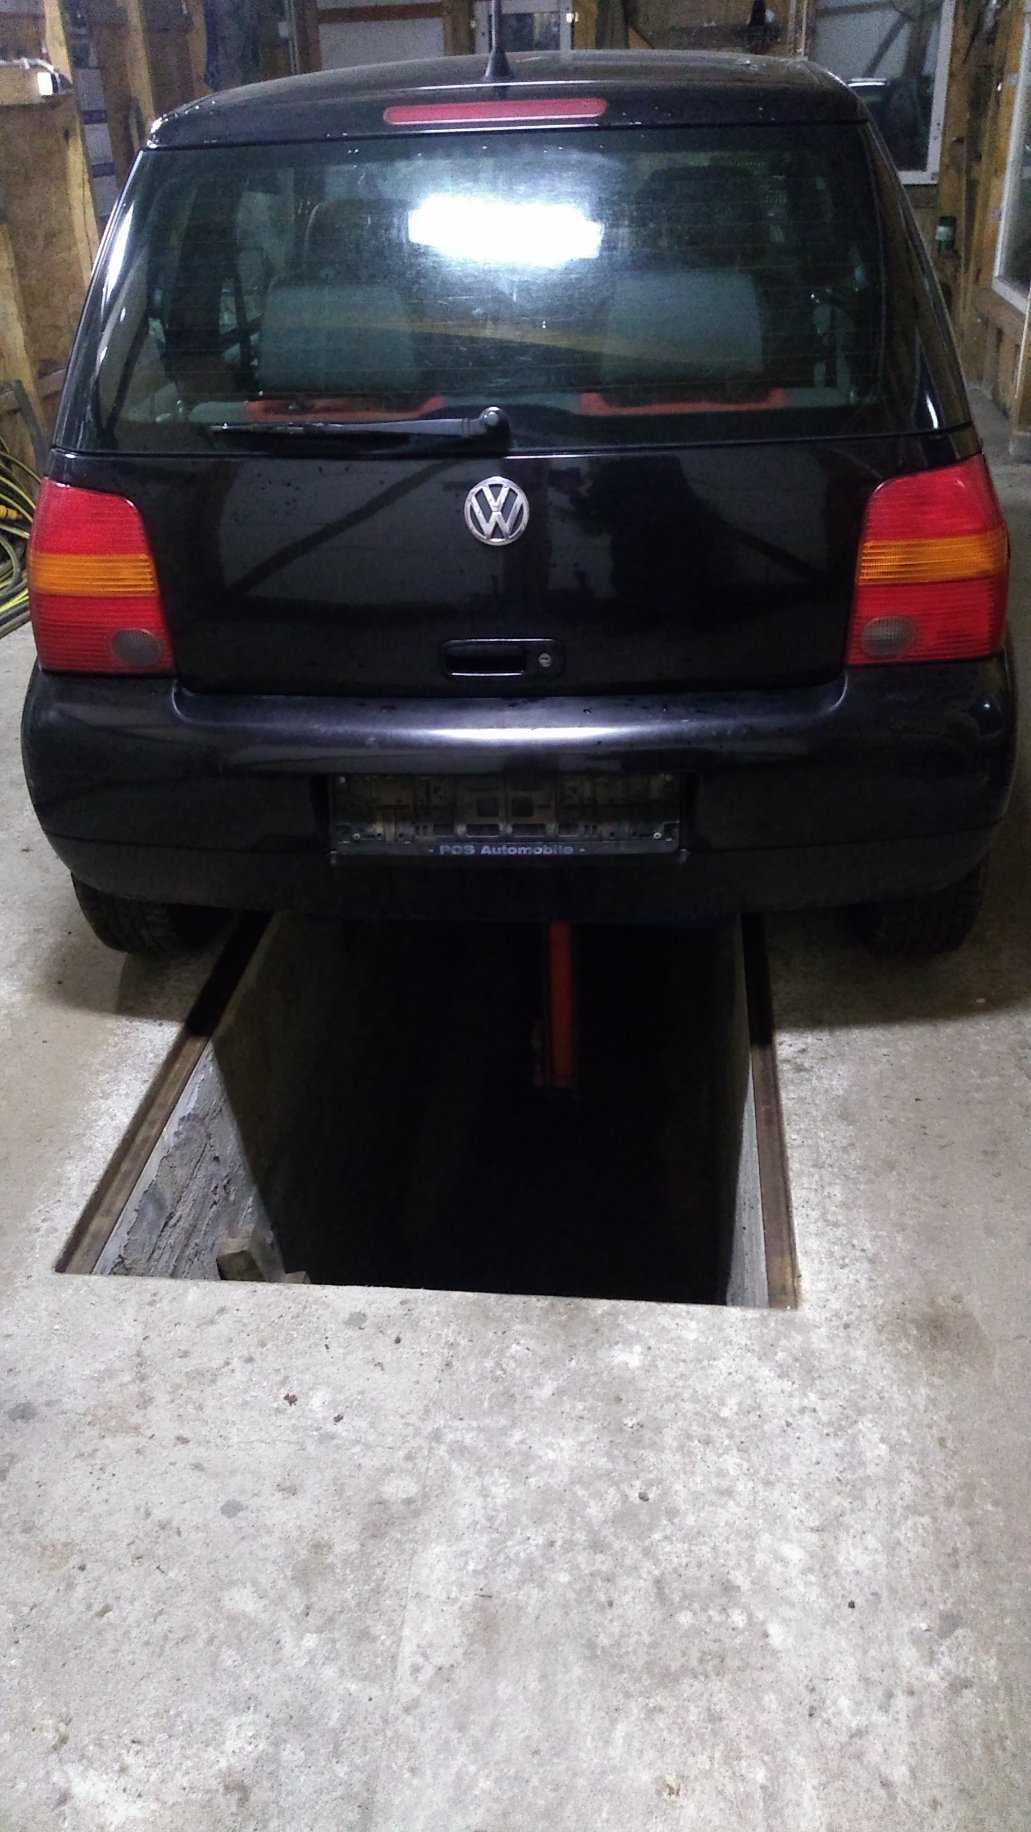 VW Lupo seat arosa tylna klapa czarna lakier 041 bez rdzy - ładna